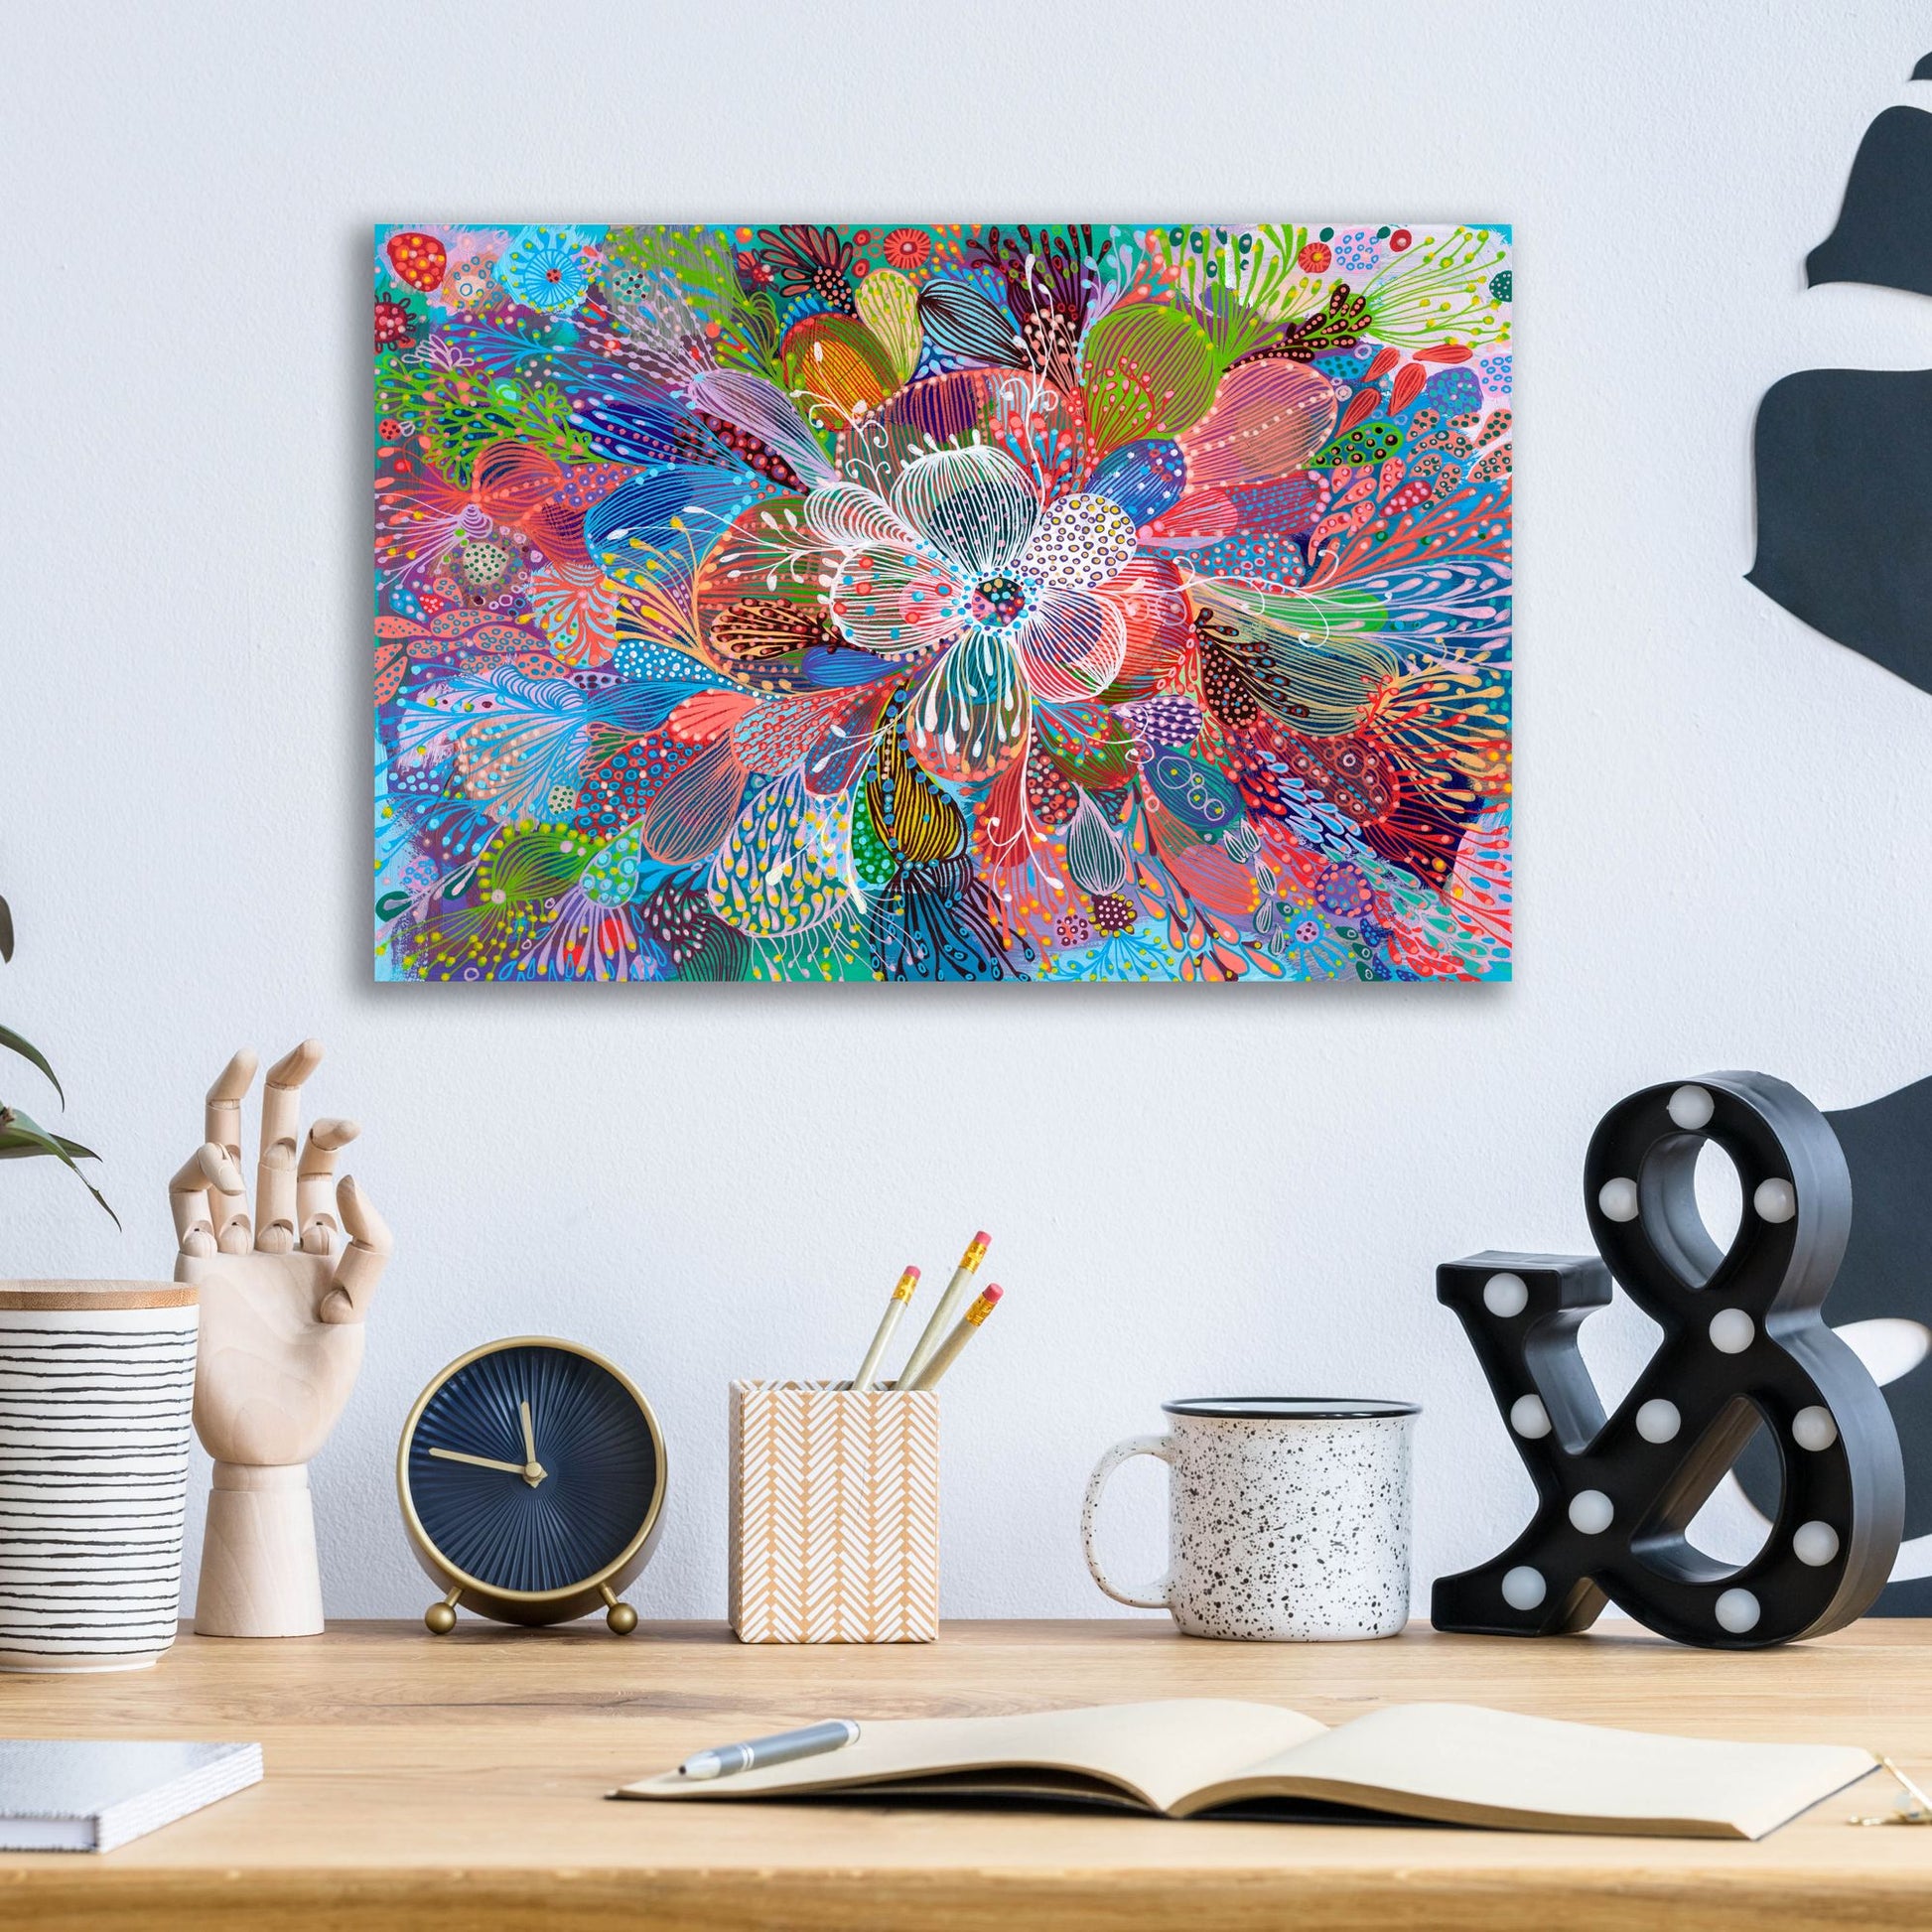 Epic Art 'Blooming2 by Noemi Ibarz, Acrylic Glass Wall Art,16x12